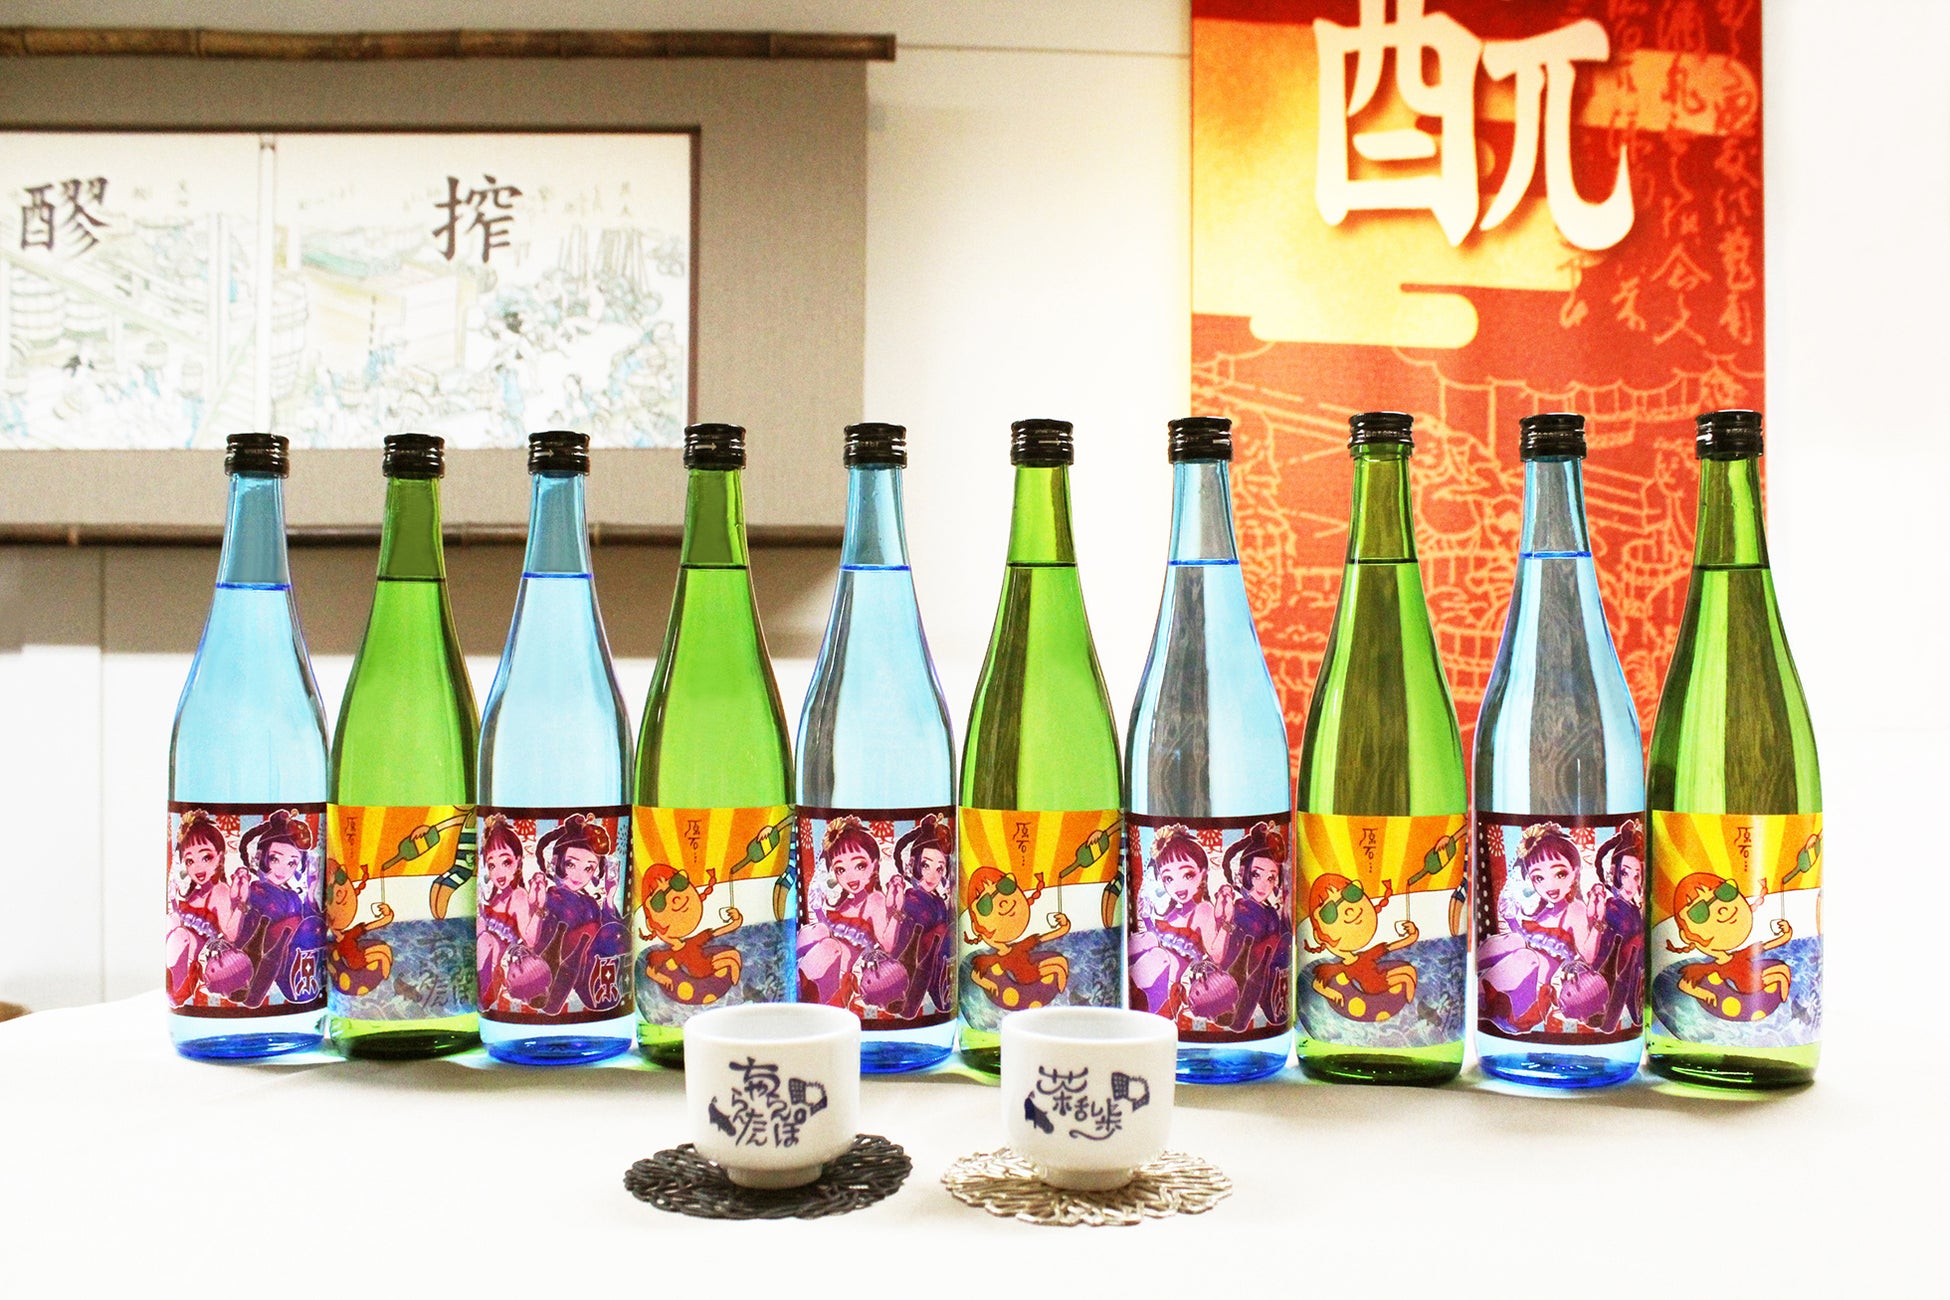 「逃げ恥」OP を手掛けた『チャラン・ポ・ランタン』、江戸時代から続く酒蔵『明利酒類』と『GENSEKI』の3者コラボによるクリエイター応援イラストコンテストから誕生したラベルデザインの夏酒が発売！のサブ画像1